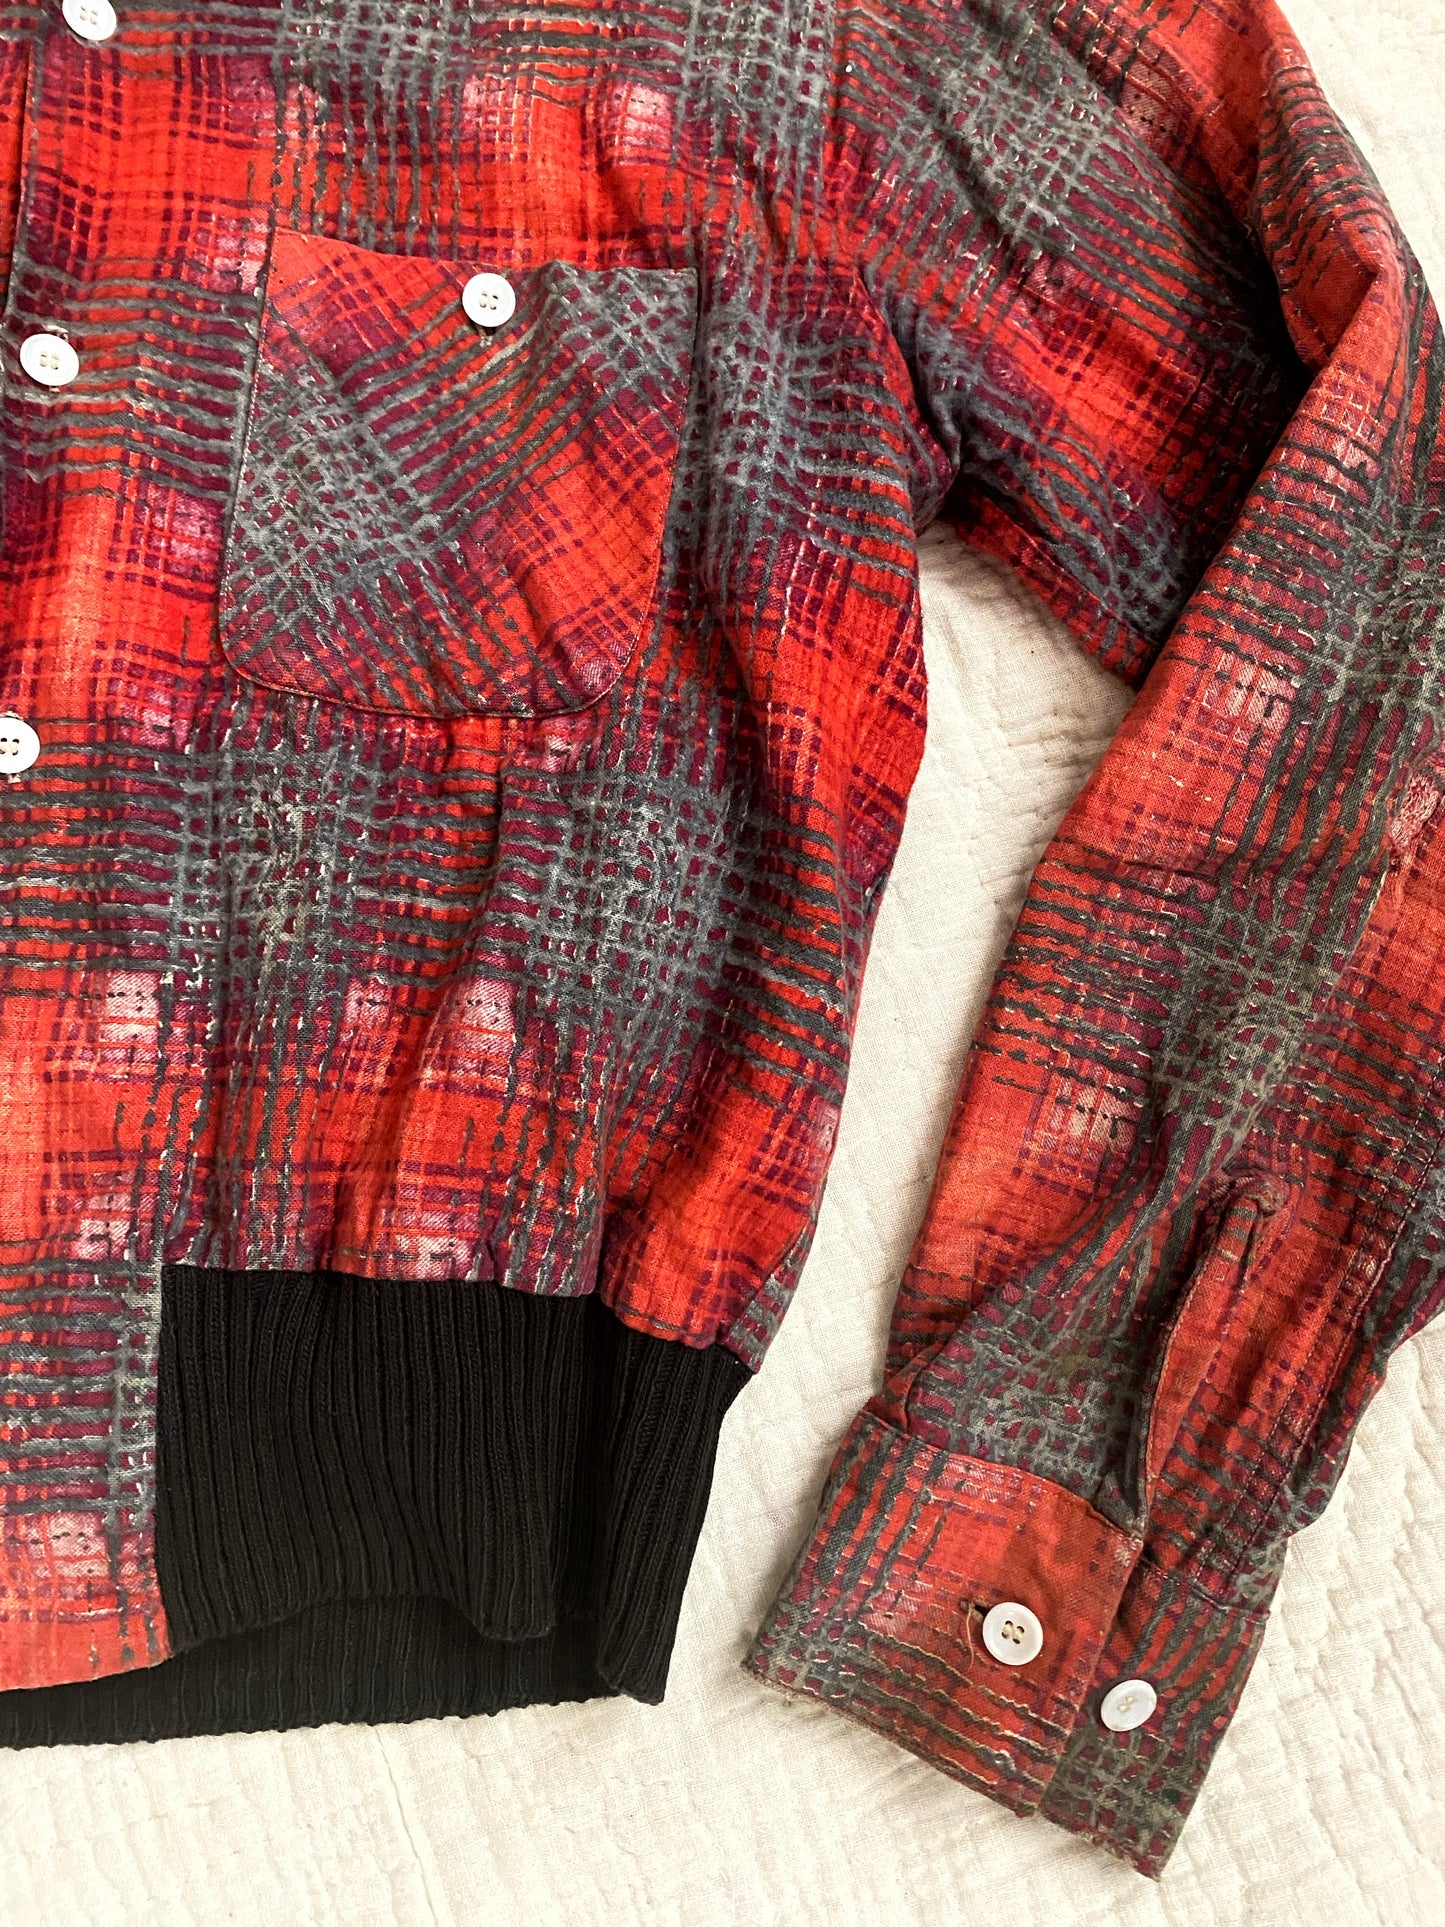 1950s Men’s Red + Burgundy Flannel Gaucho Shirt- M